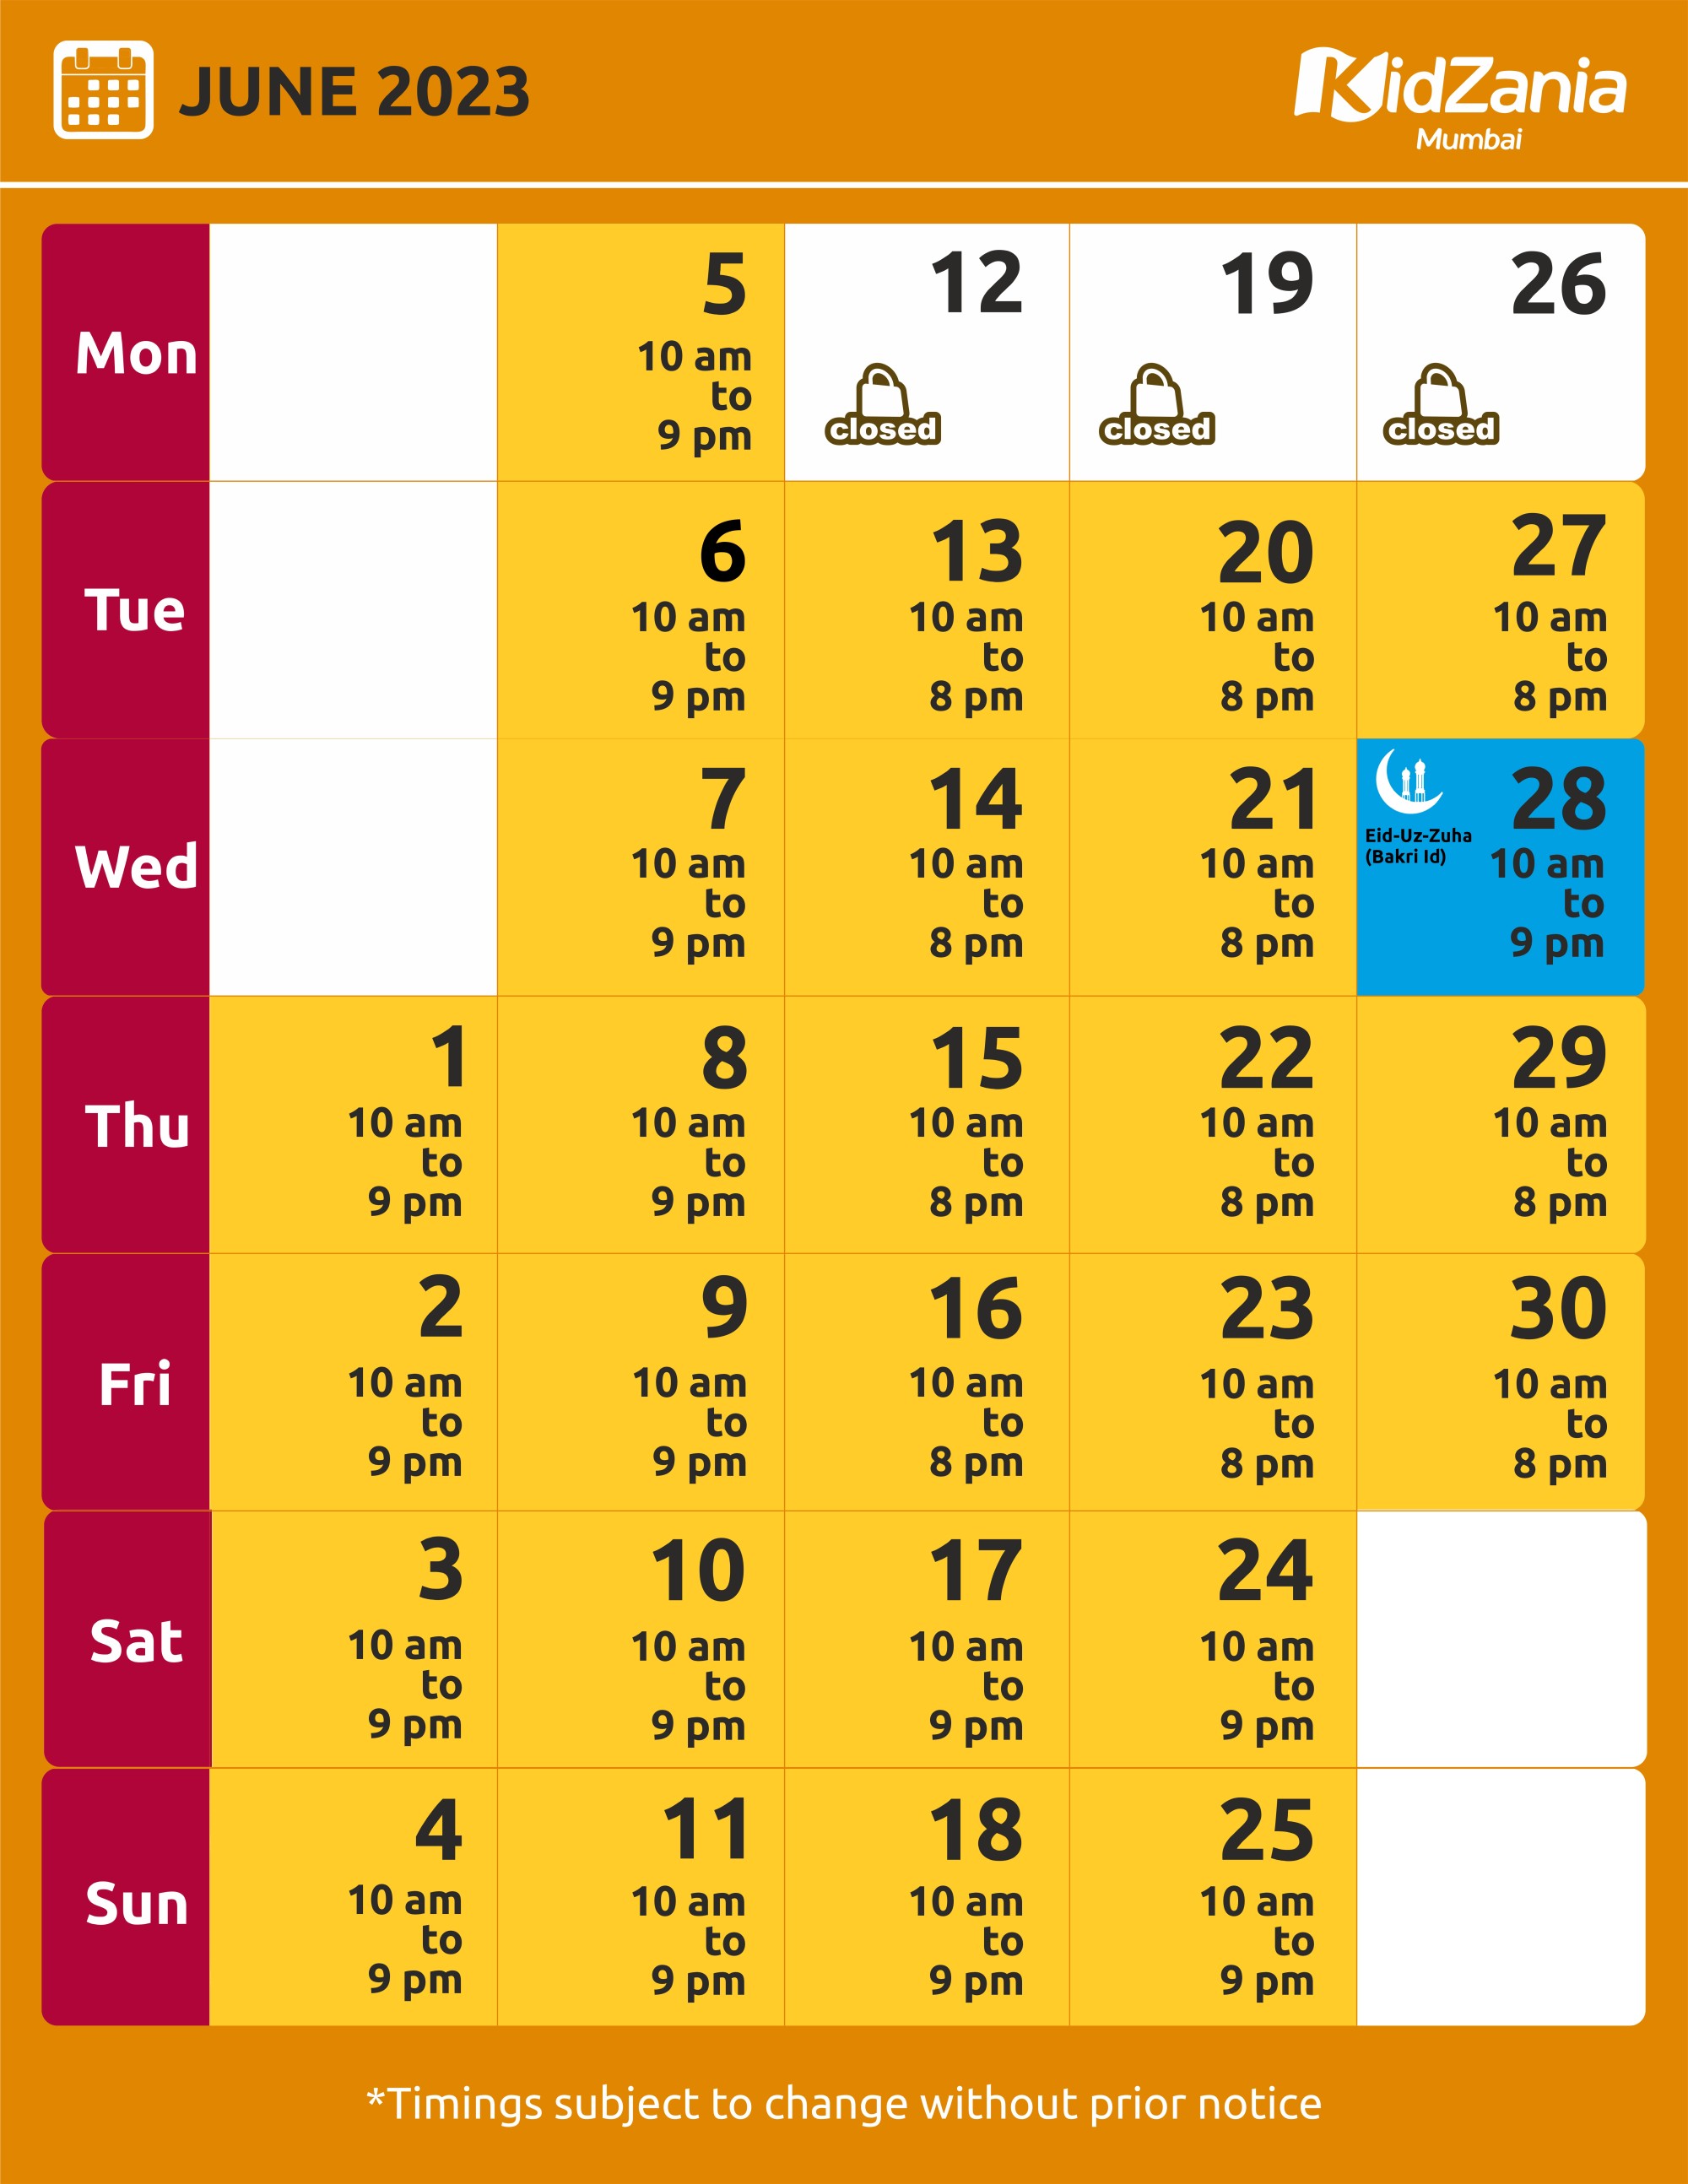 KidZania Mumbai Calendar Jun-23